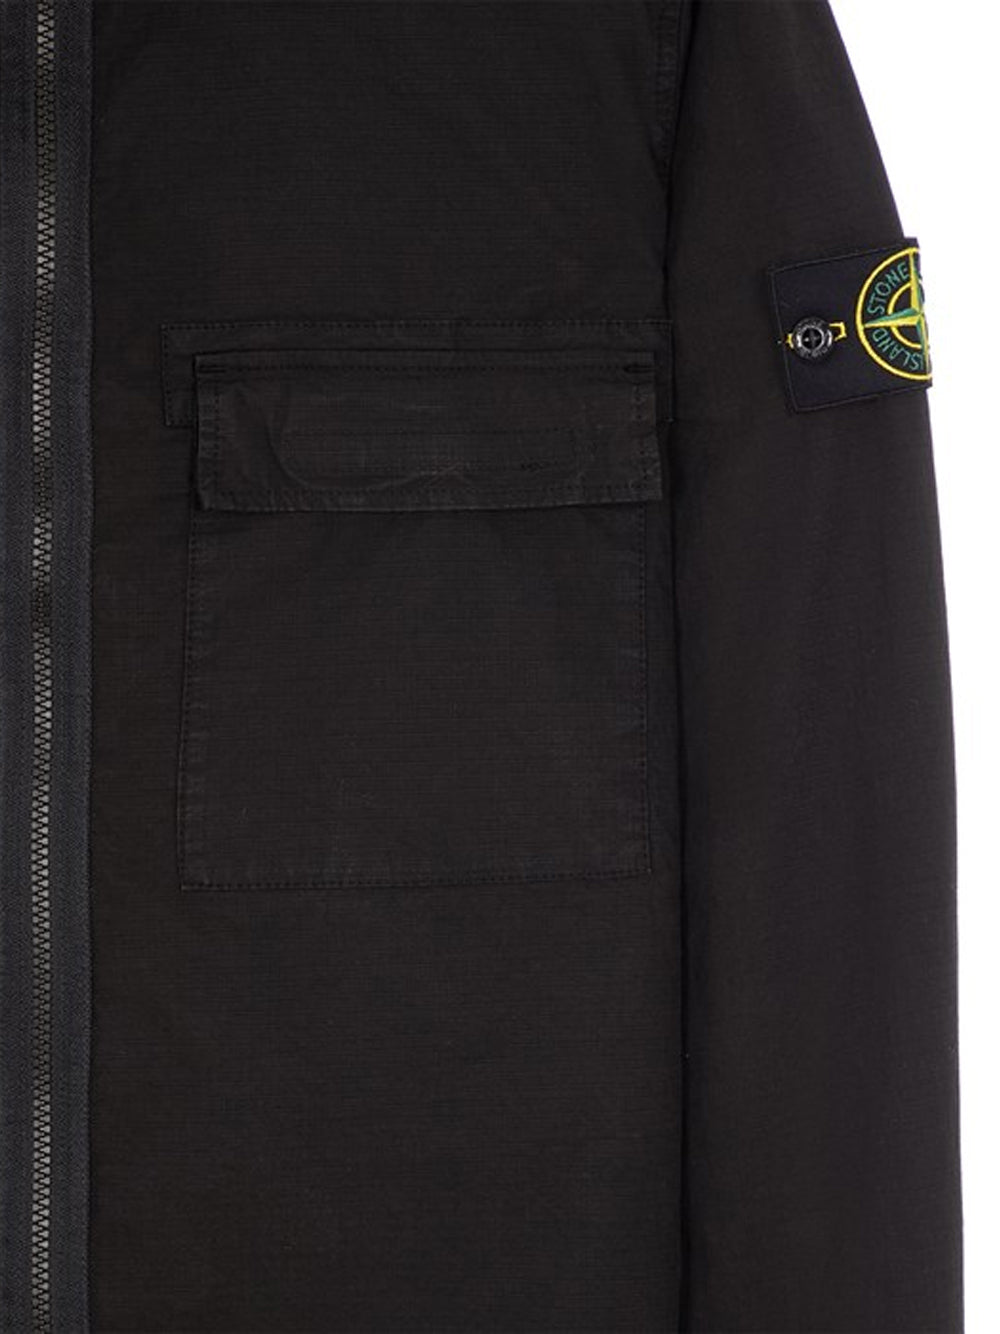 STONE ISLAND Double Pocket Regular Fit Overshirt Black - MAISONDEFASHION.COM